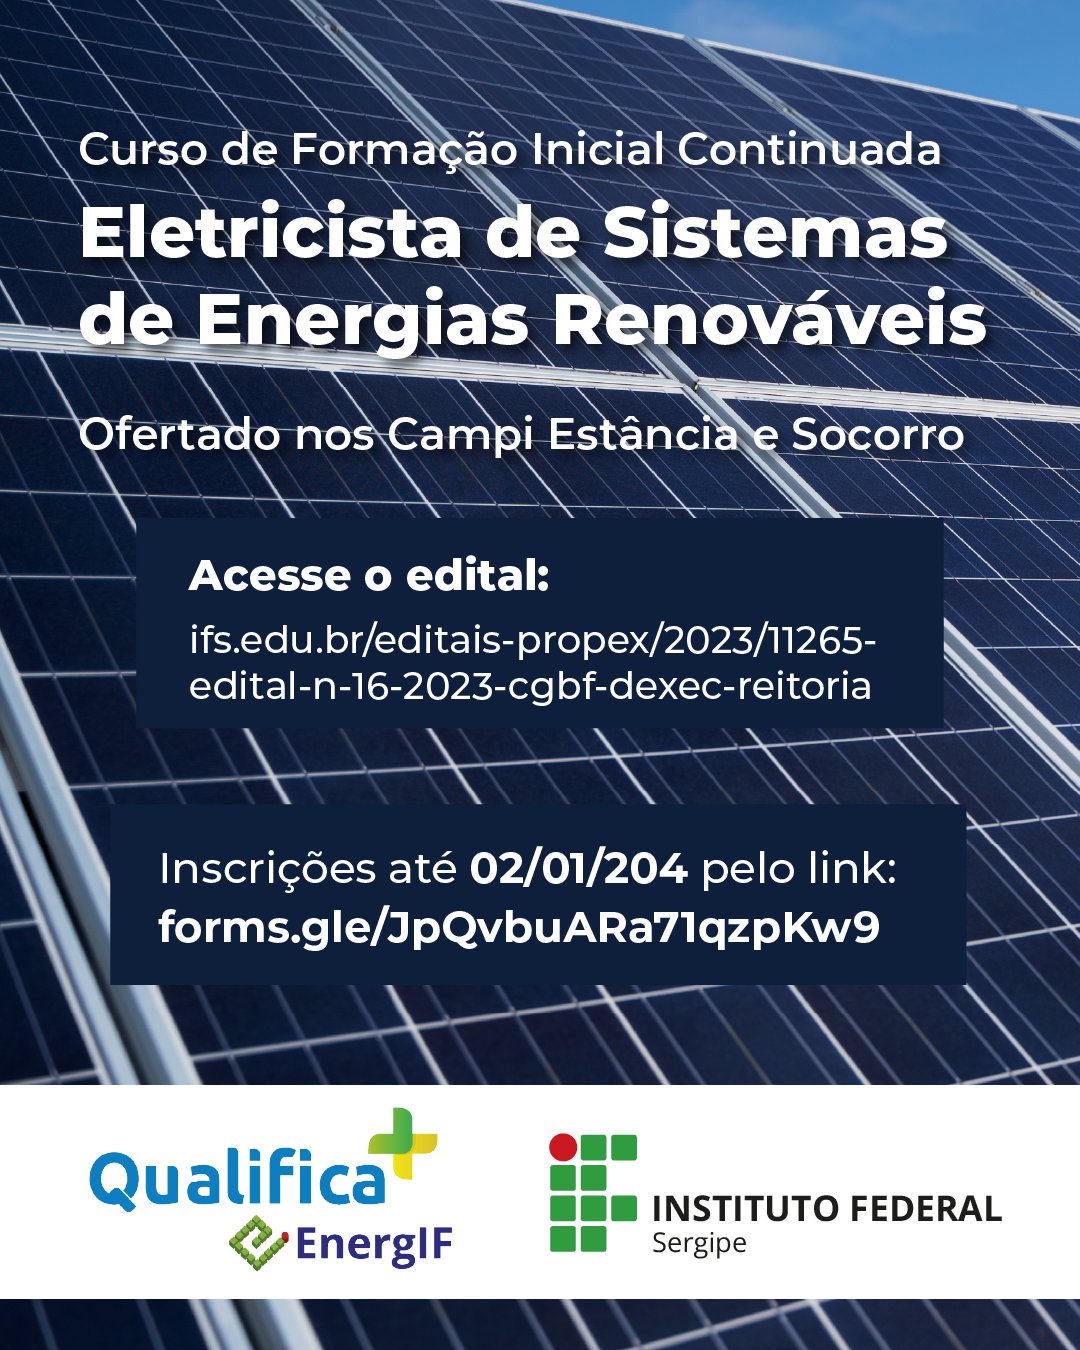 IFS oferta 40 vagas para cursos FIC de Eletricista de Sistemas de Energias Renováveis